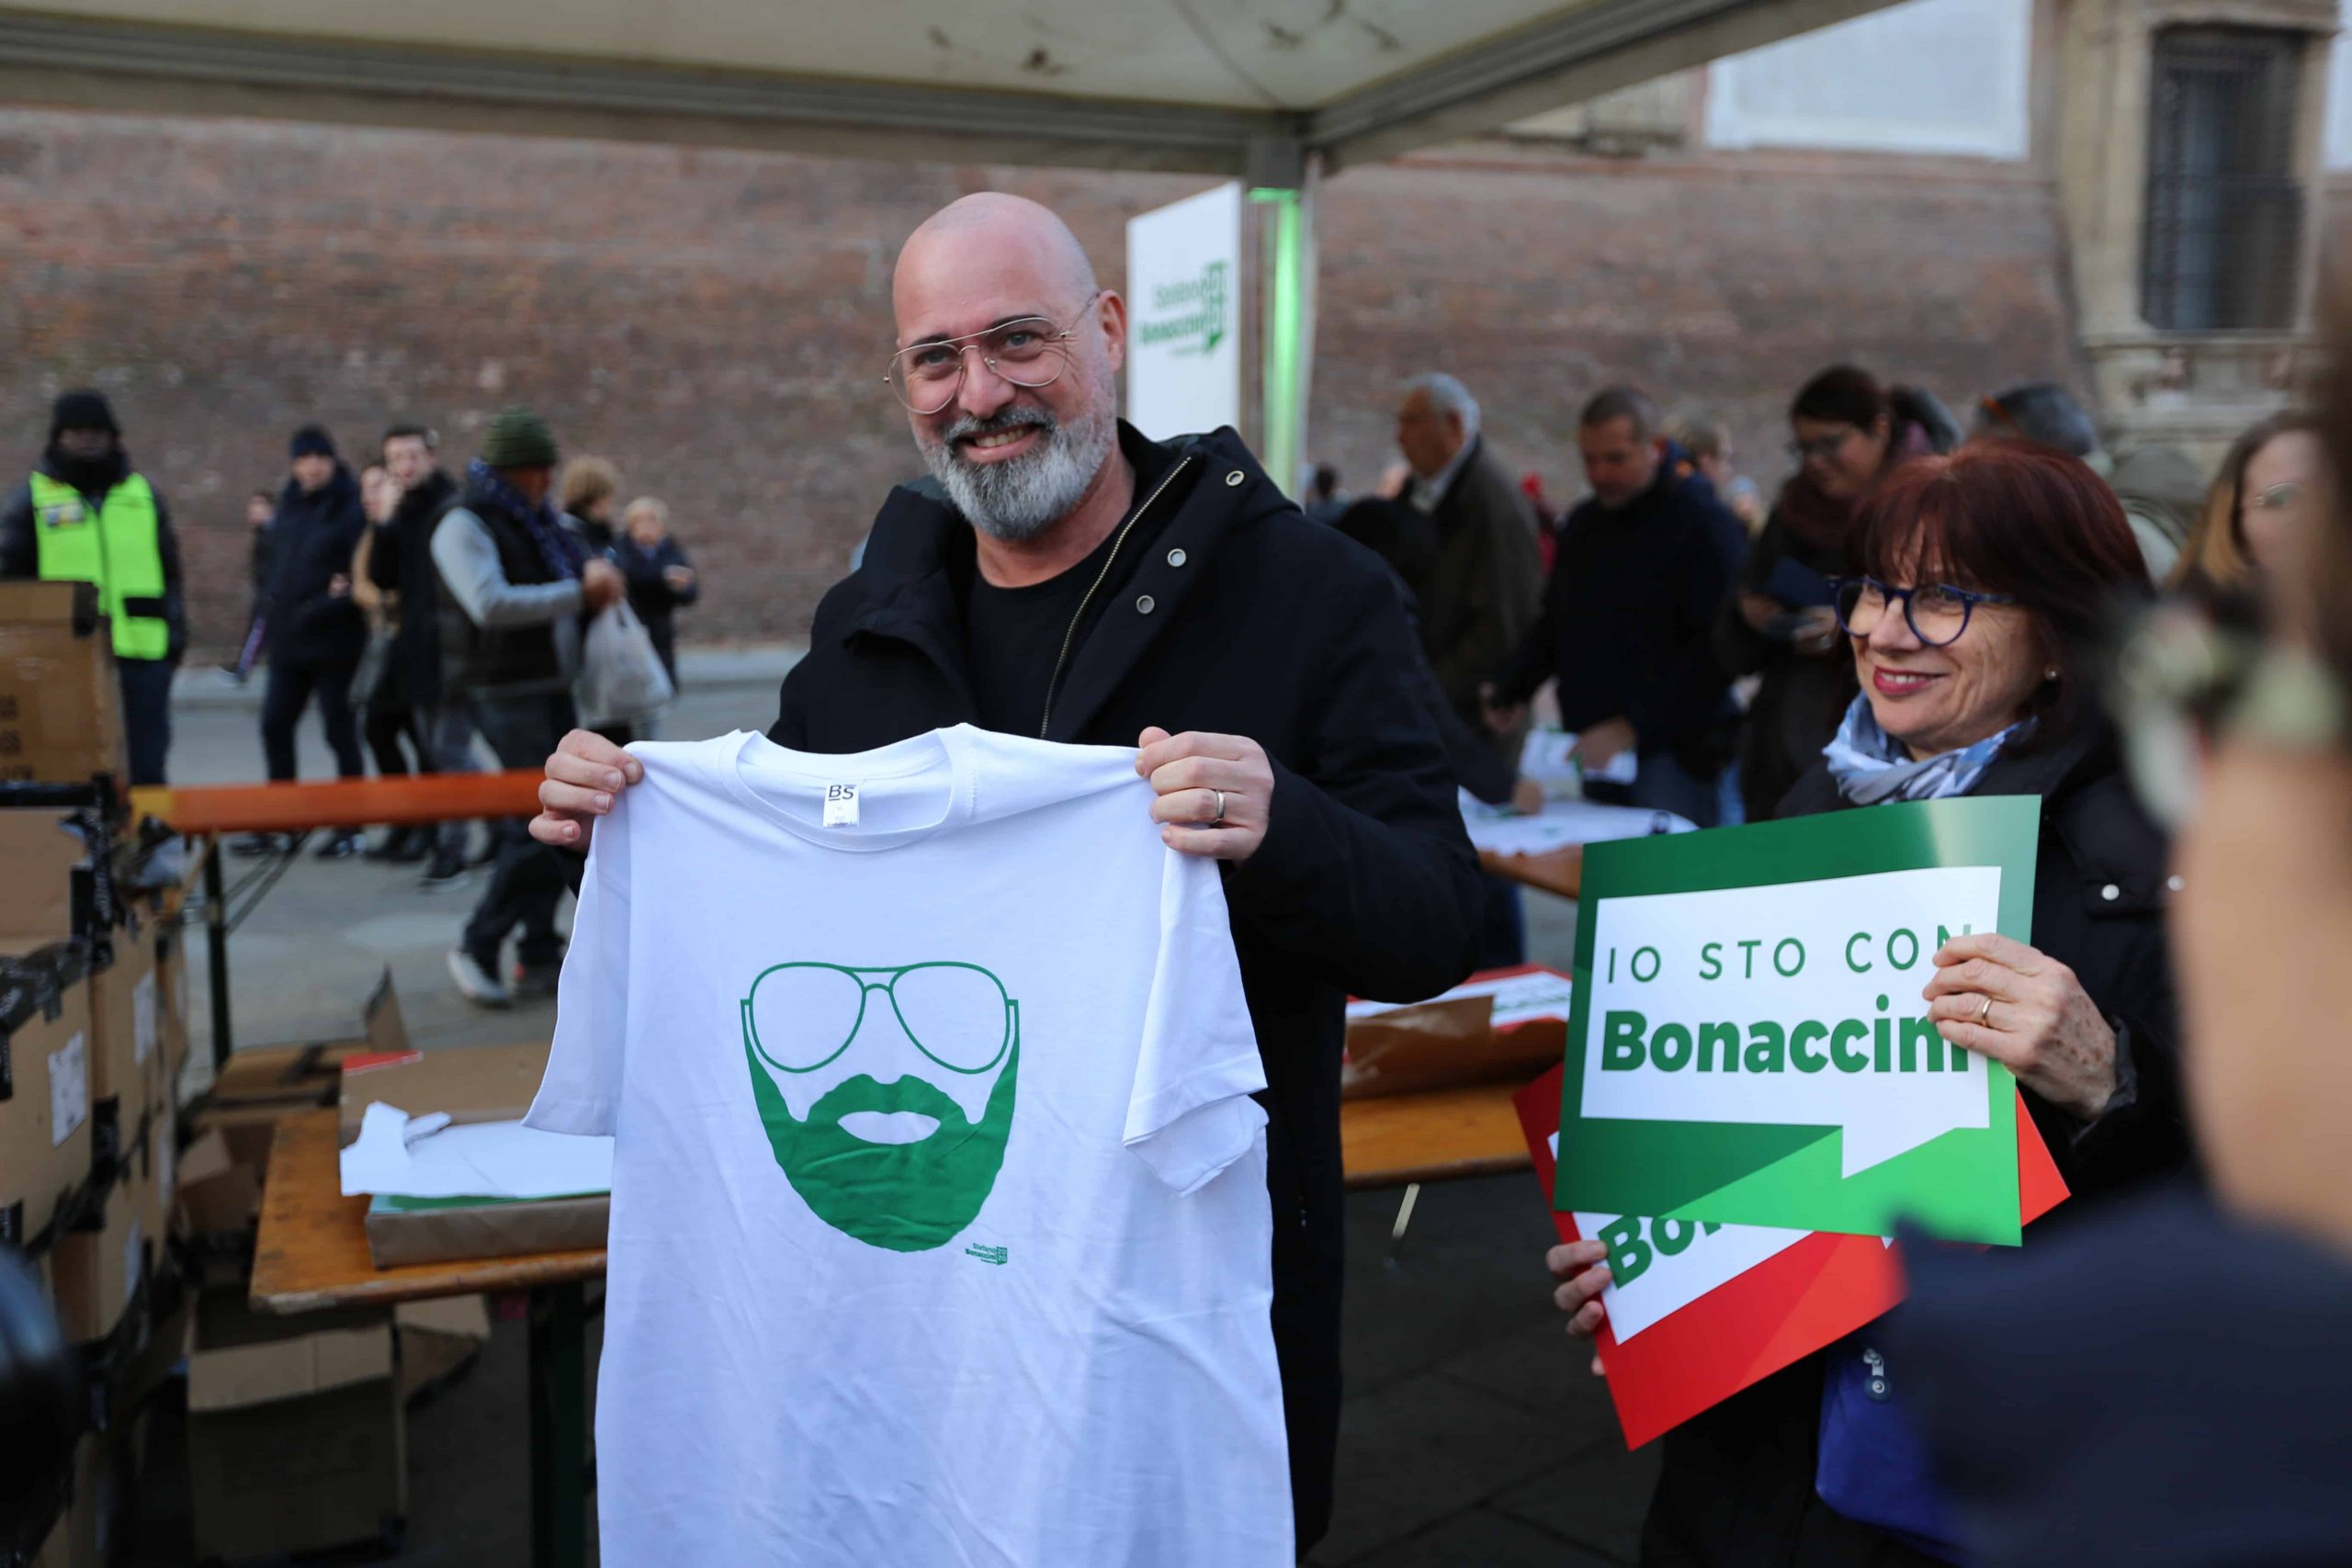 Stefano Bonaccini | Campagna elettorale | Agenzia ORA